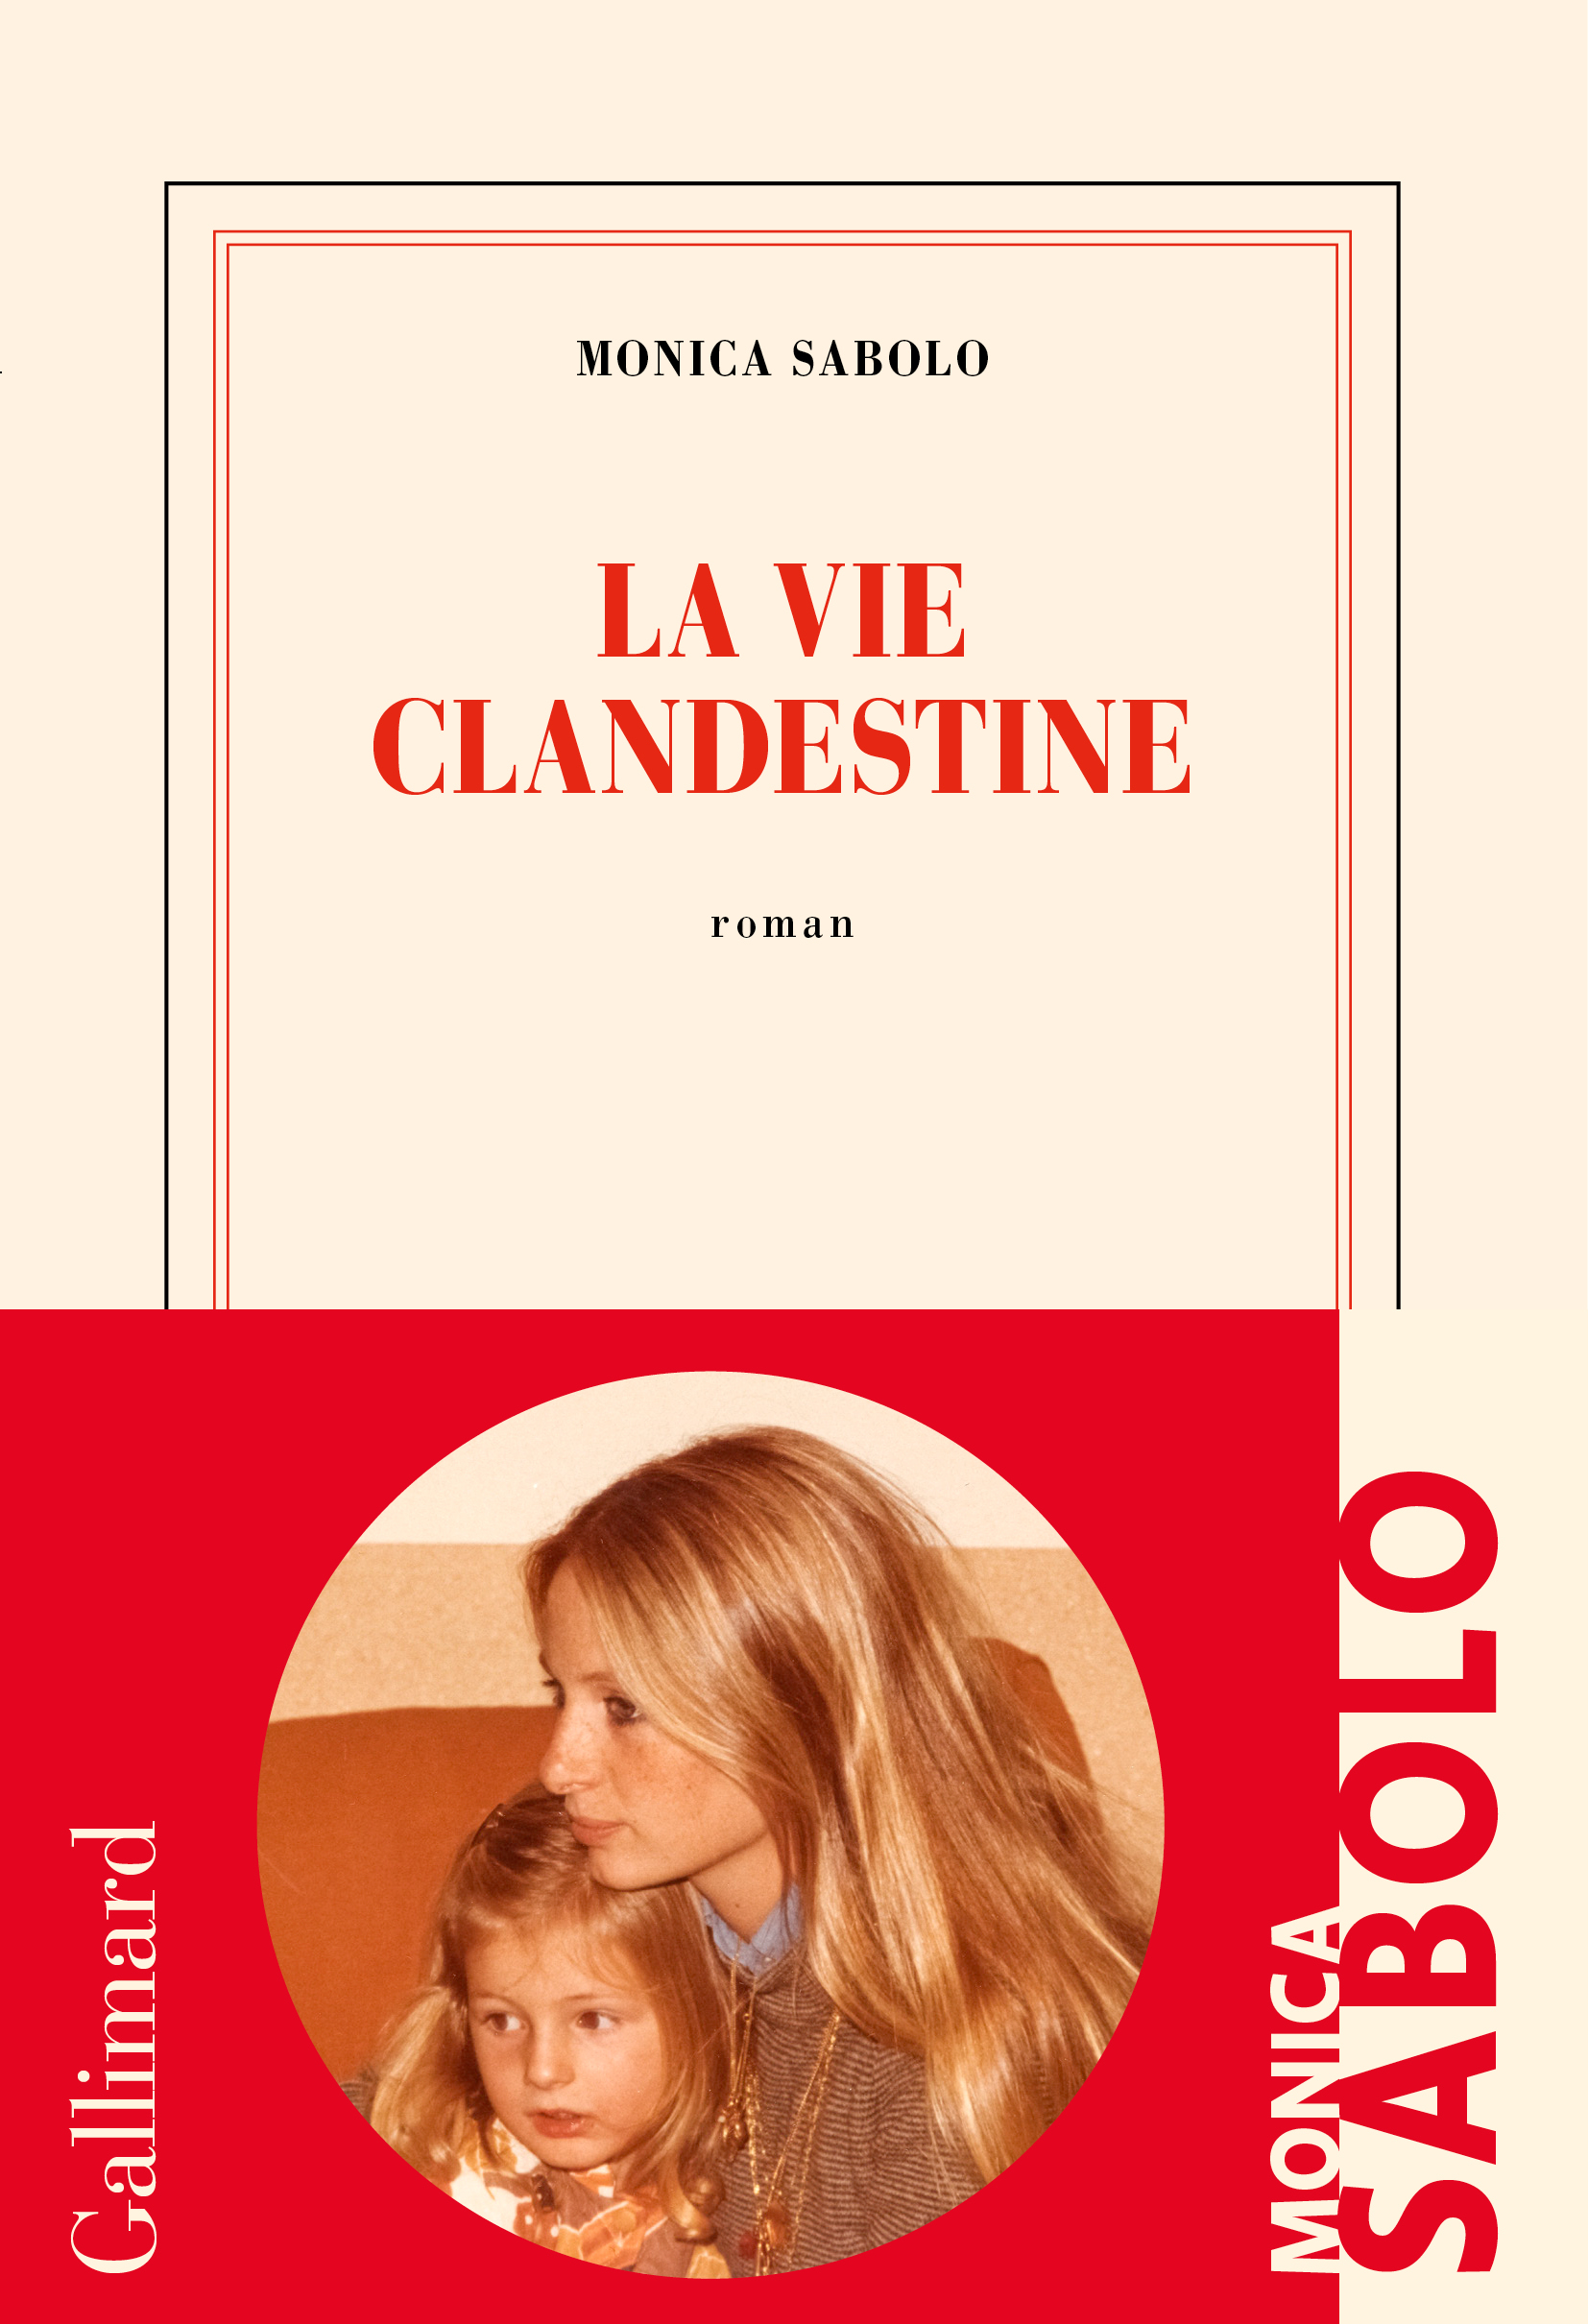 La vie clandestine - Monica Sabolo - (Gallimard)